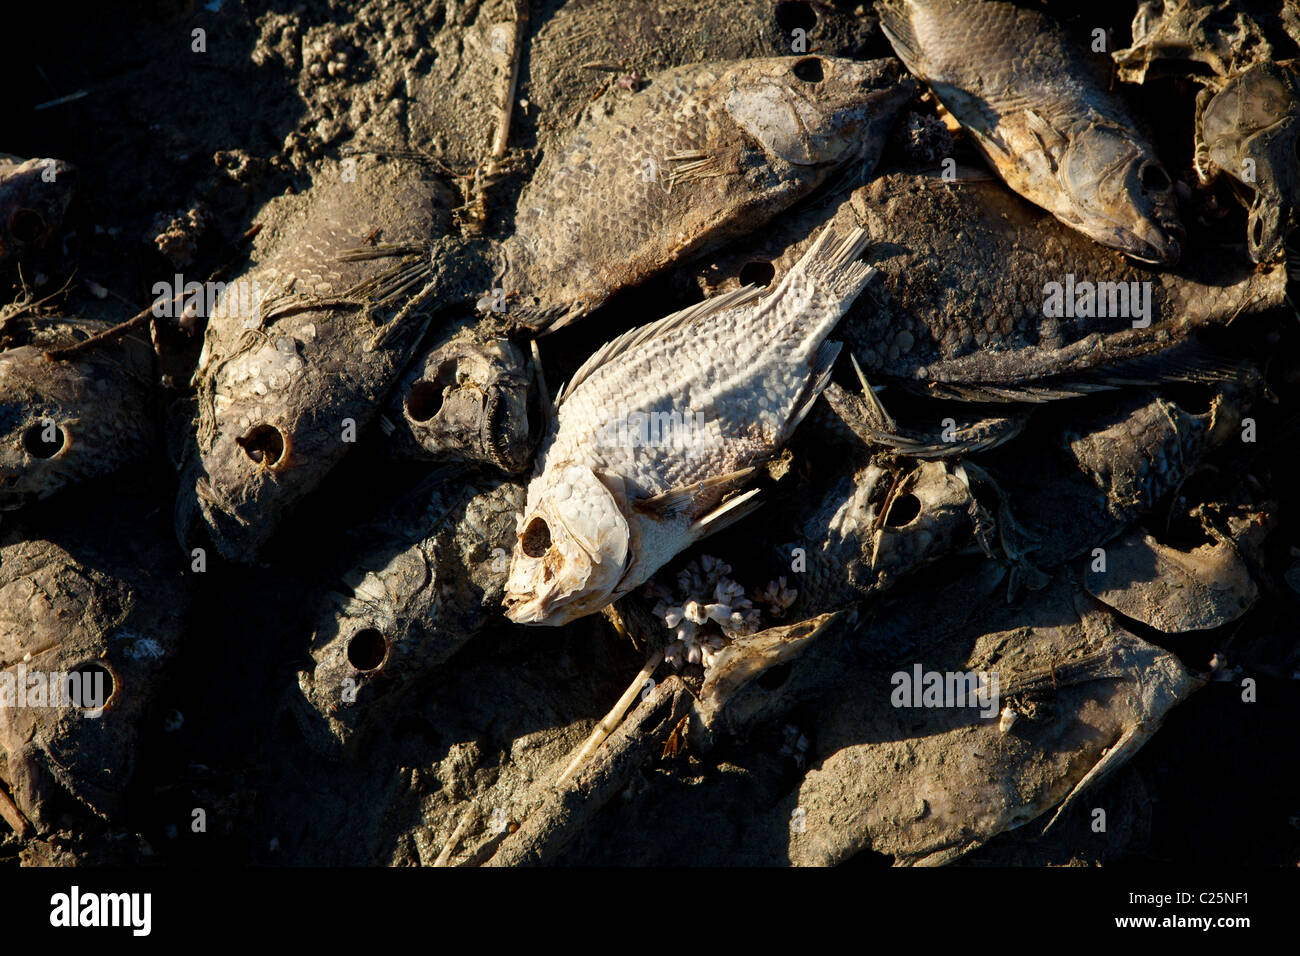 Talipia morto sulla costa del Salton Sea Imperial Valley, CA. I pesci muoiono per mancanza di ossigeno e di concentrazioni di sale. Foto Stock